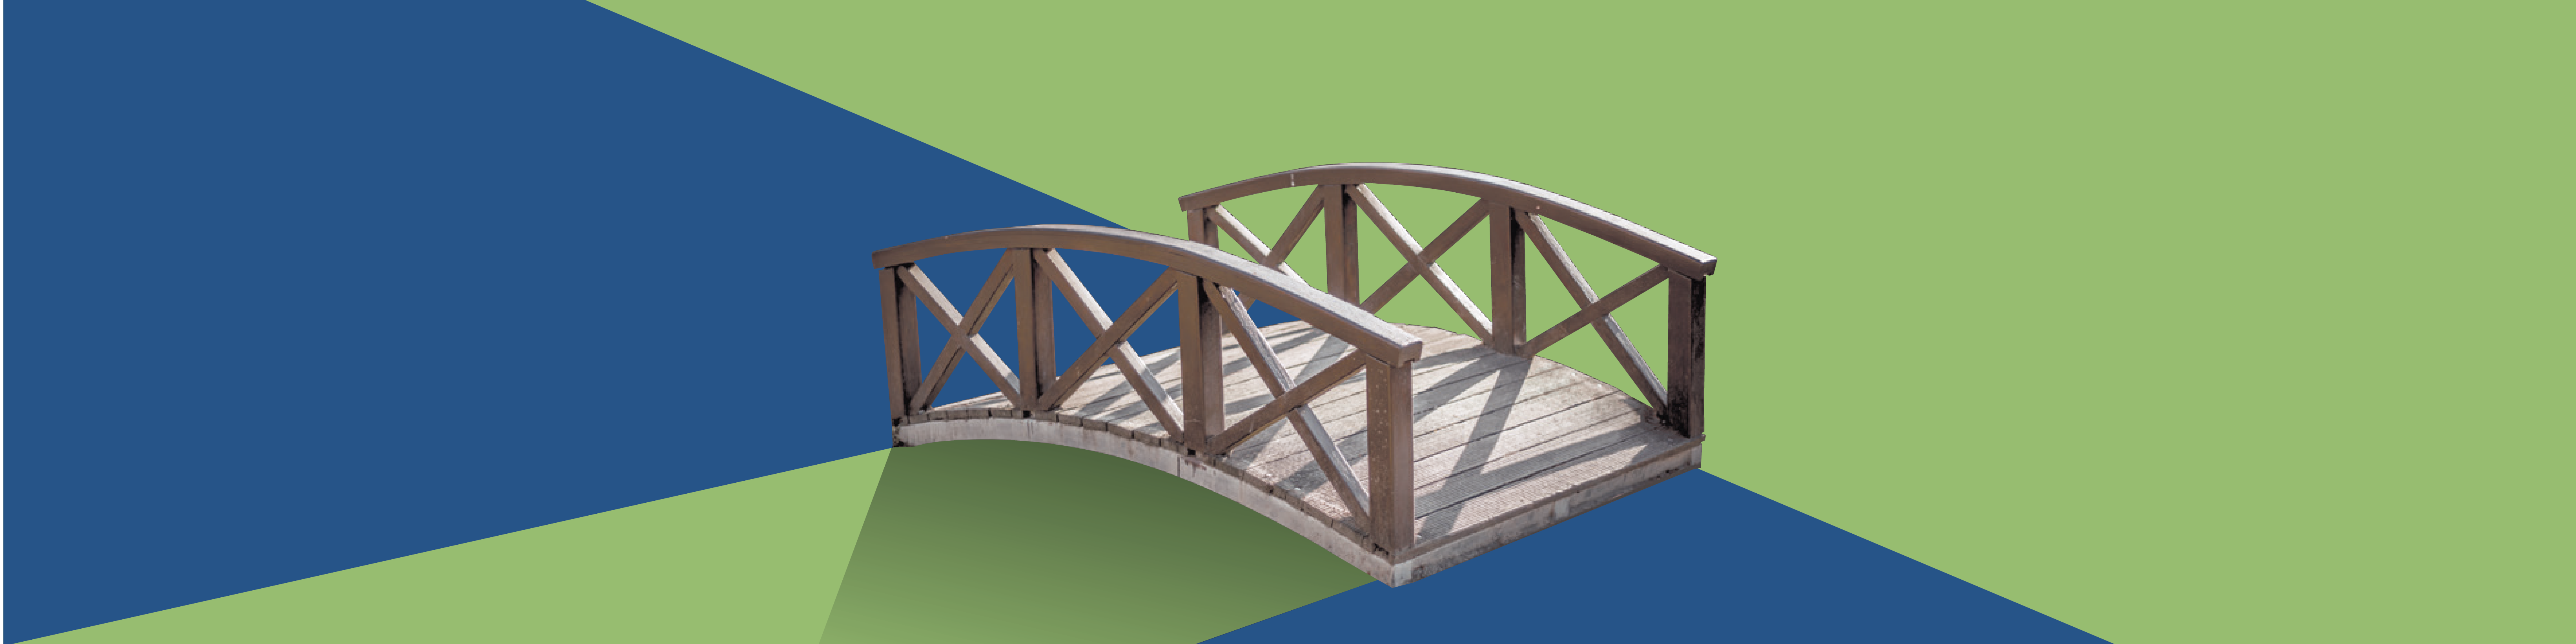 Bild Brücke vor blau-grünem Hintergrund